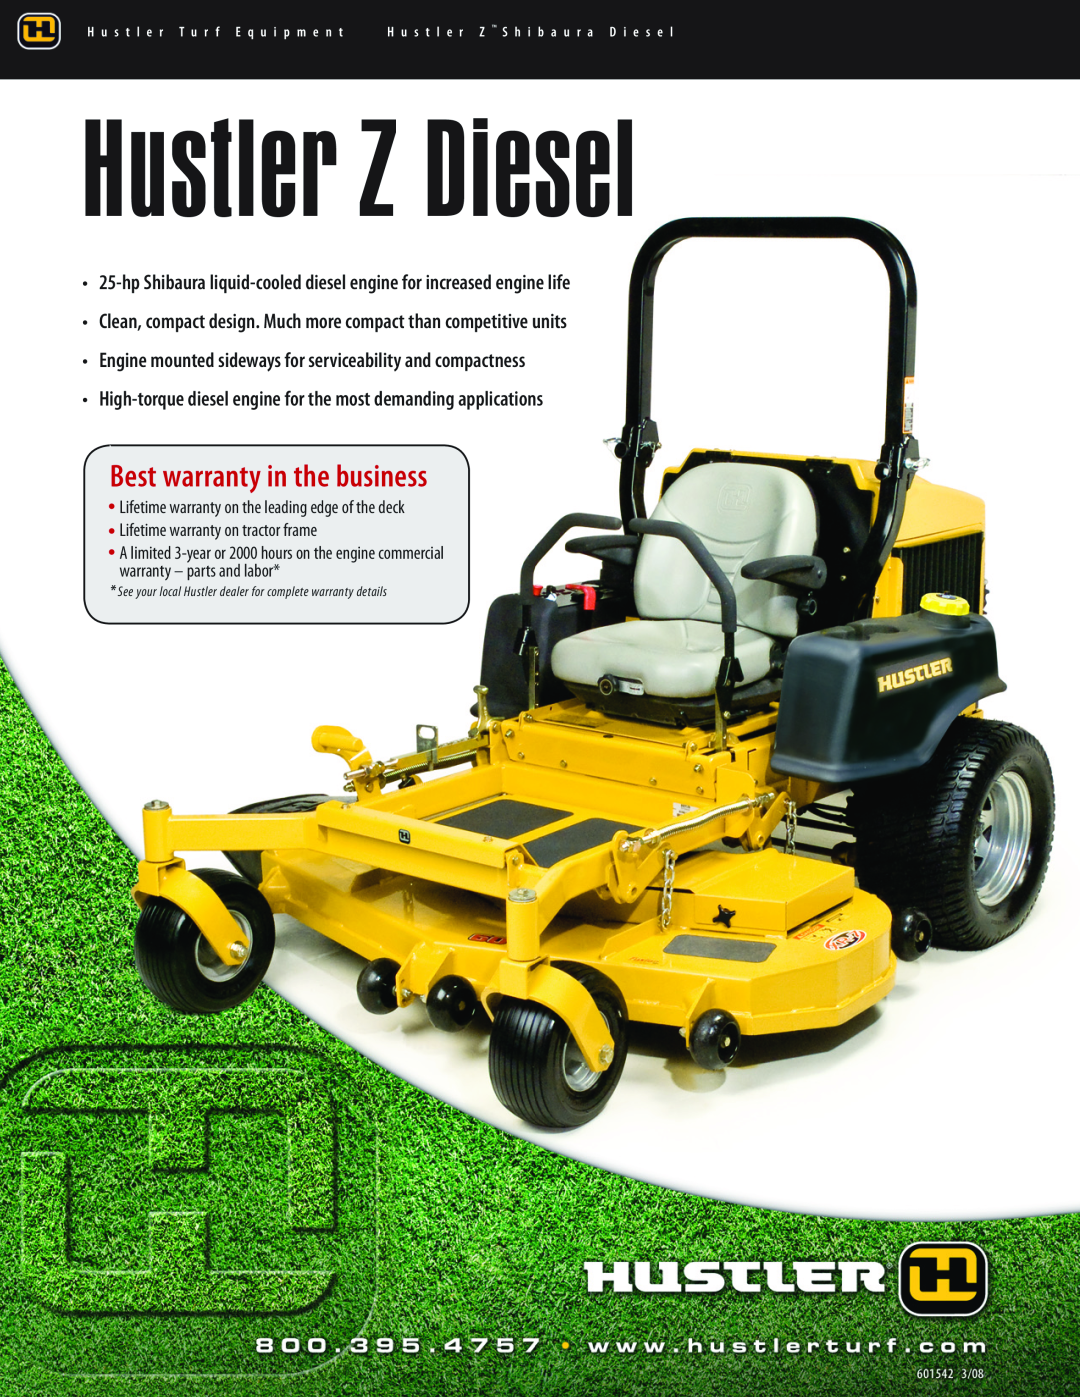 Hustler Turf warranty Hustler Z Diesel, Best warranty in the business 